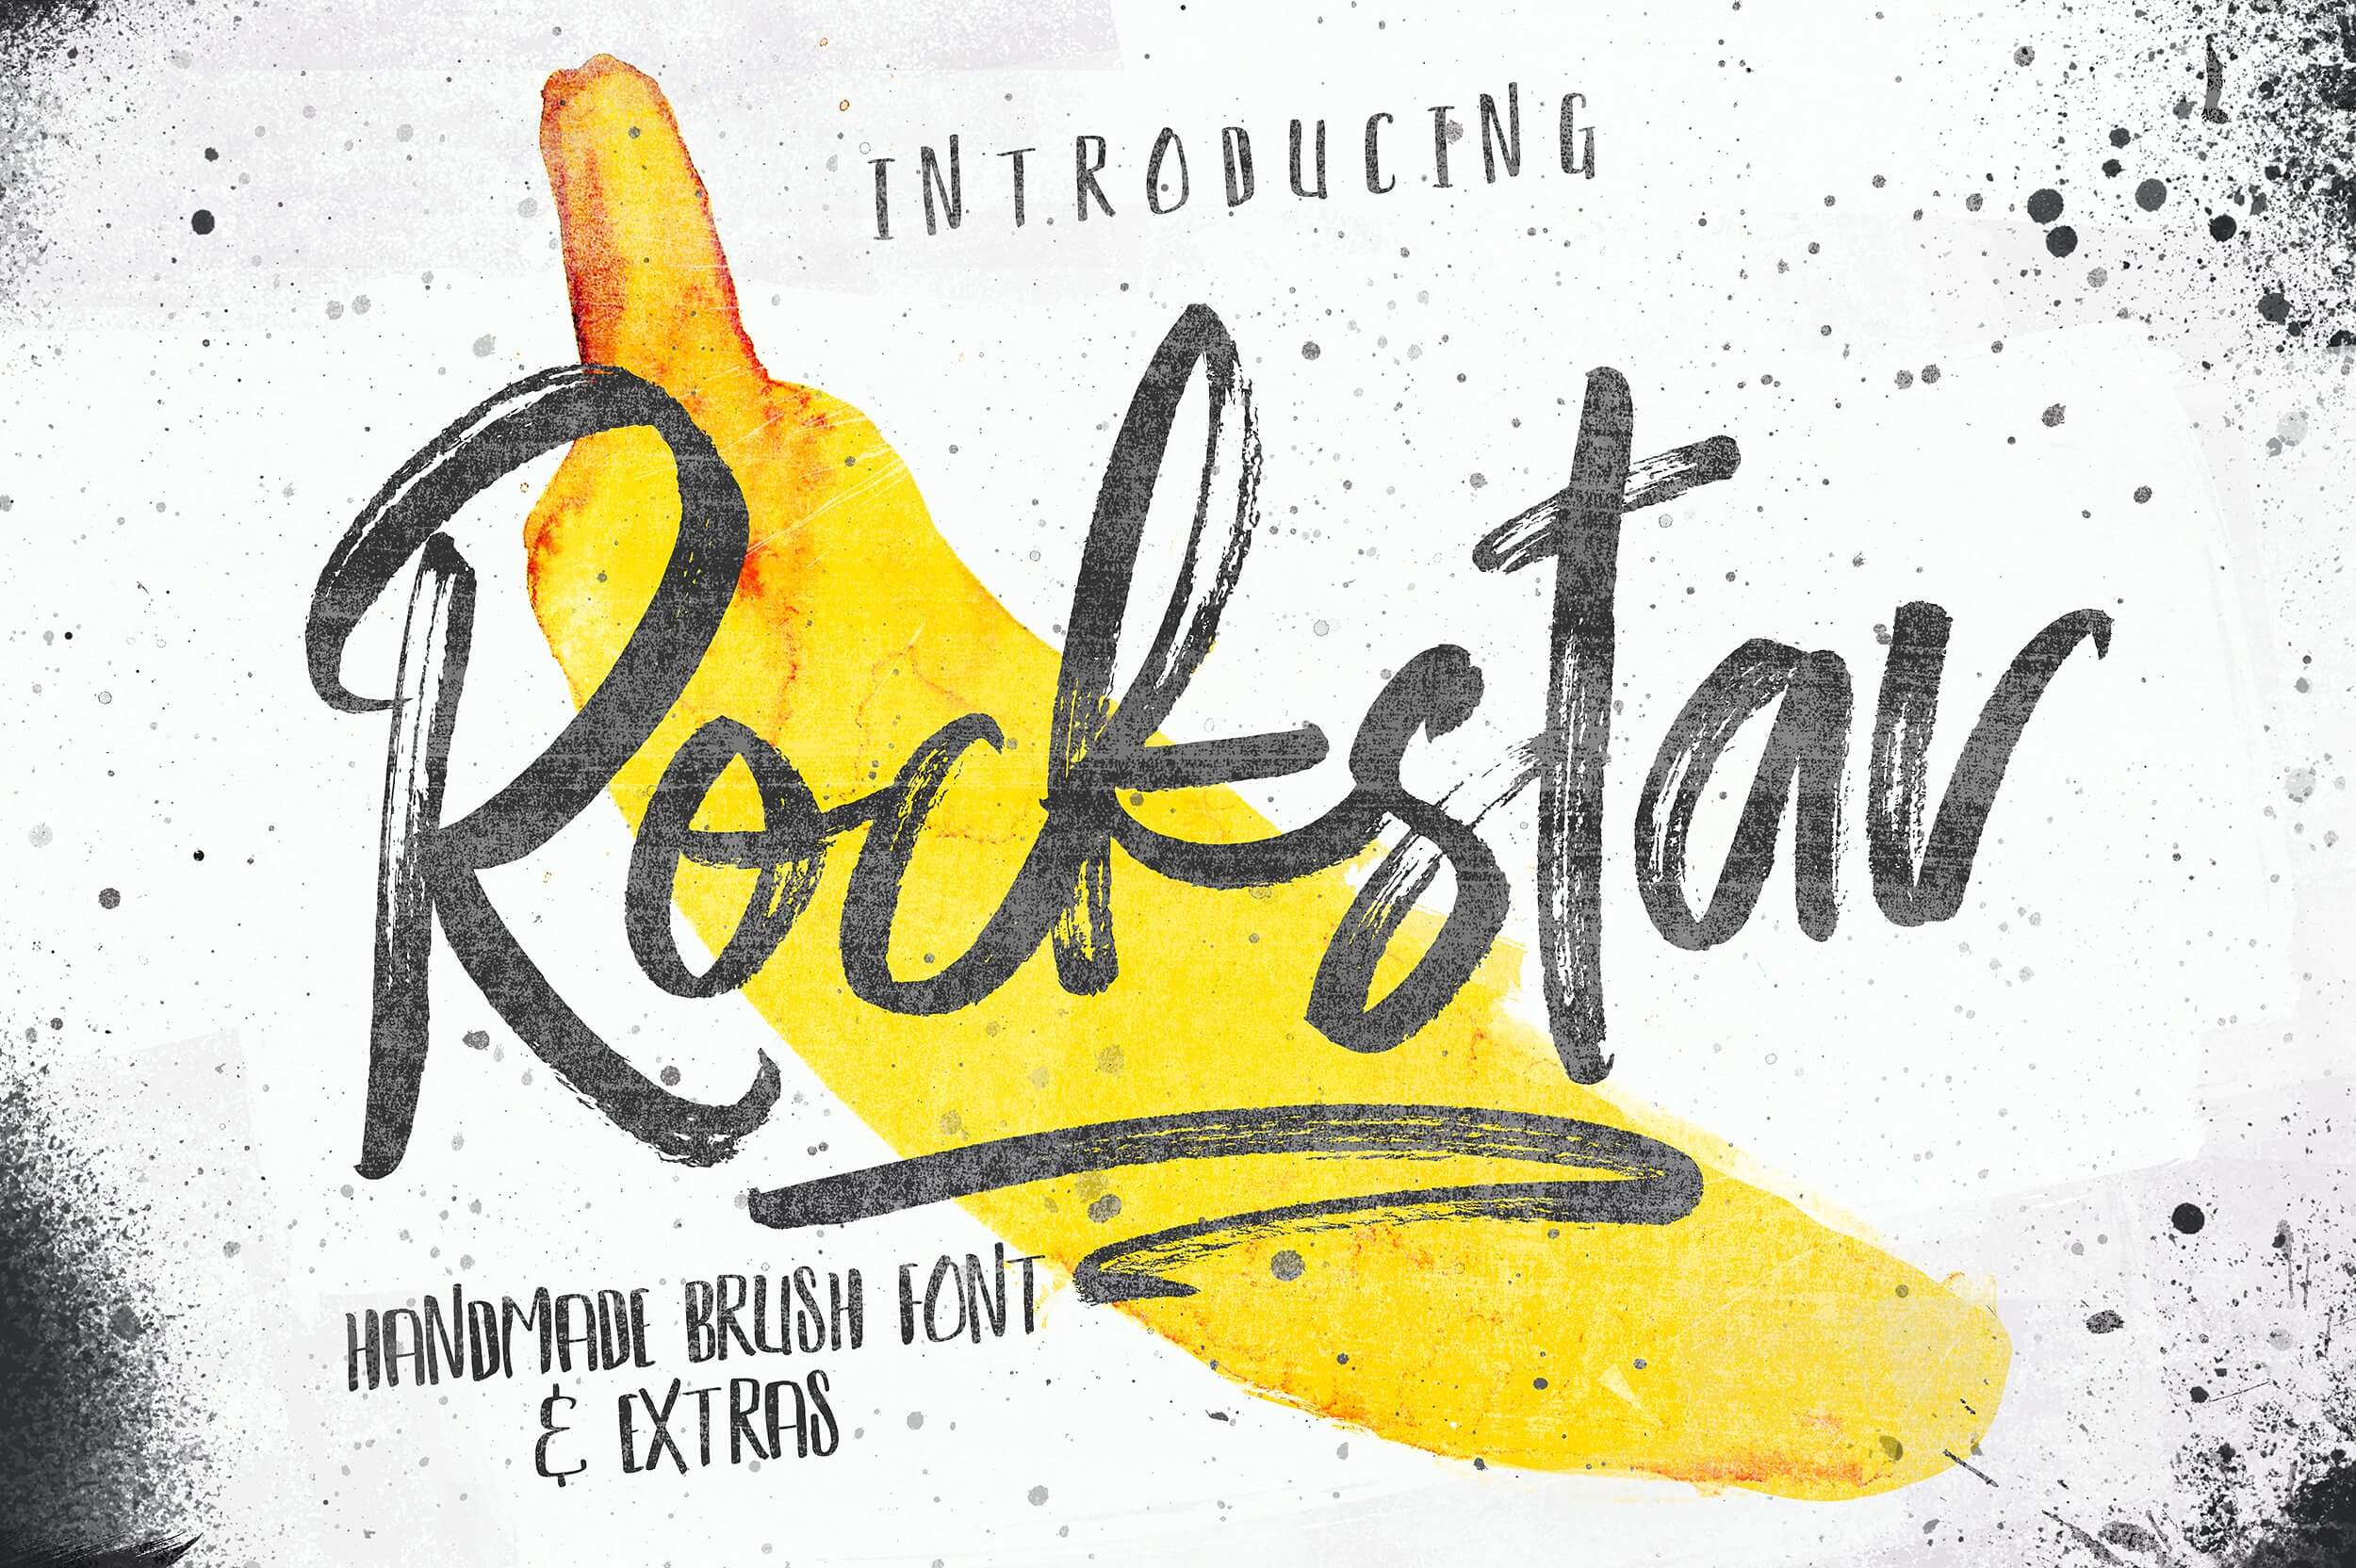 Rockstar (Download Exclusive Version)